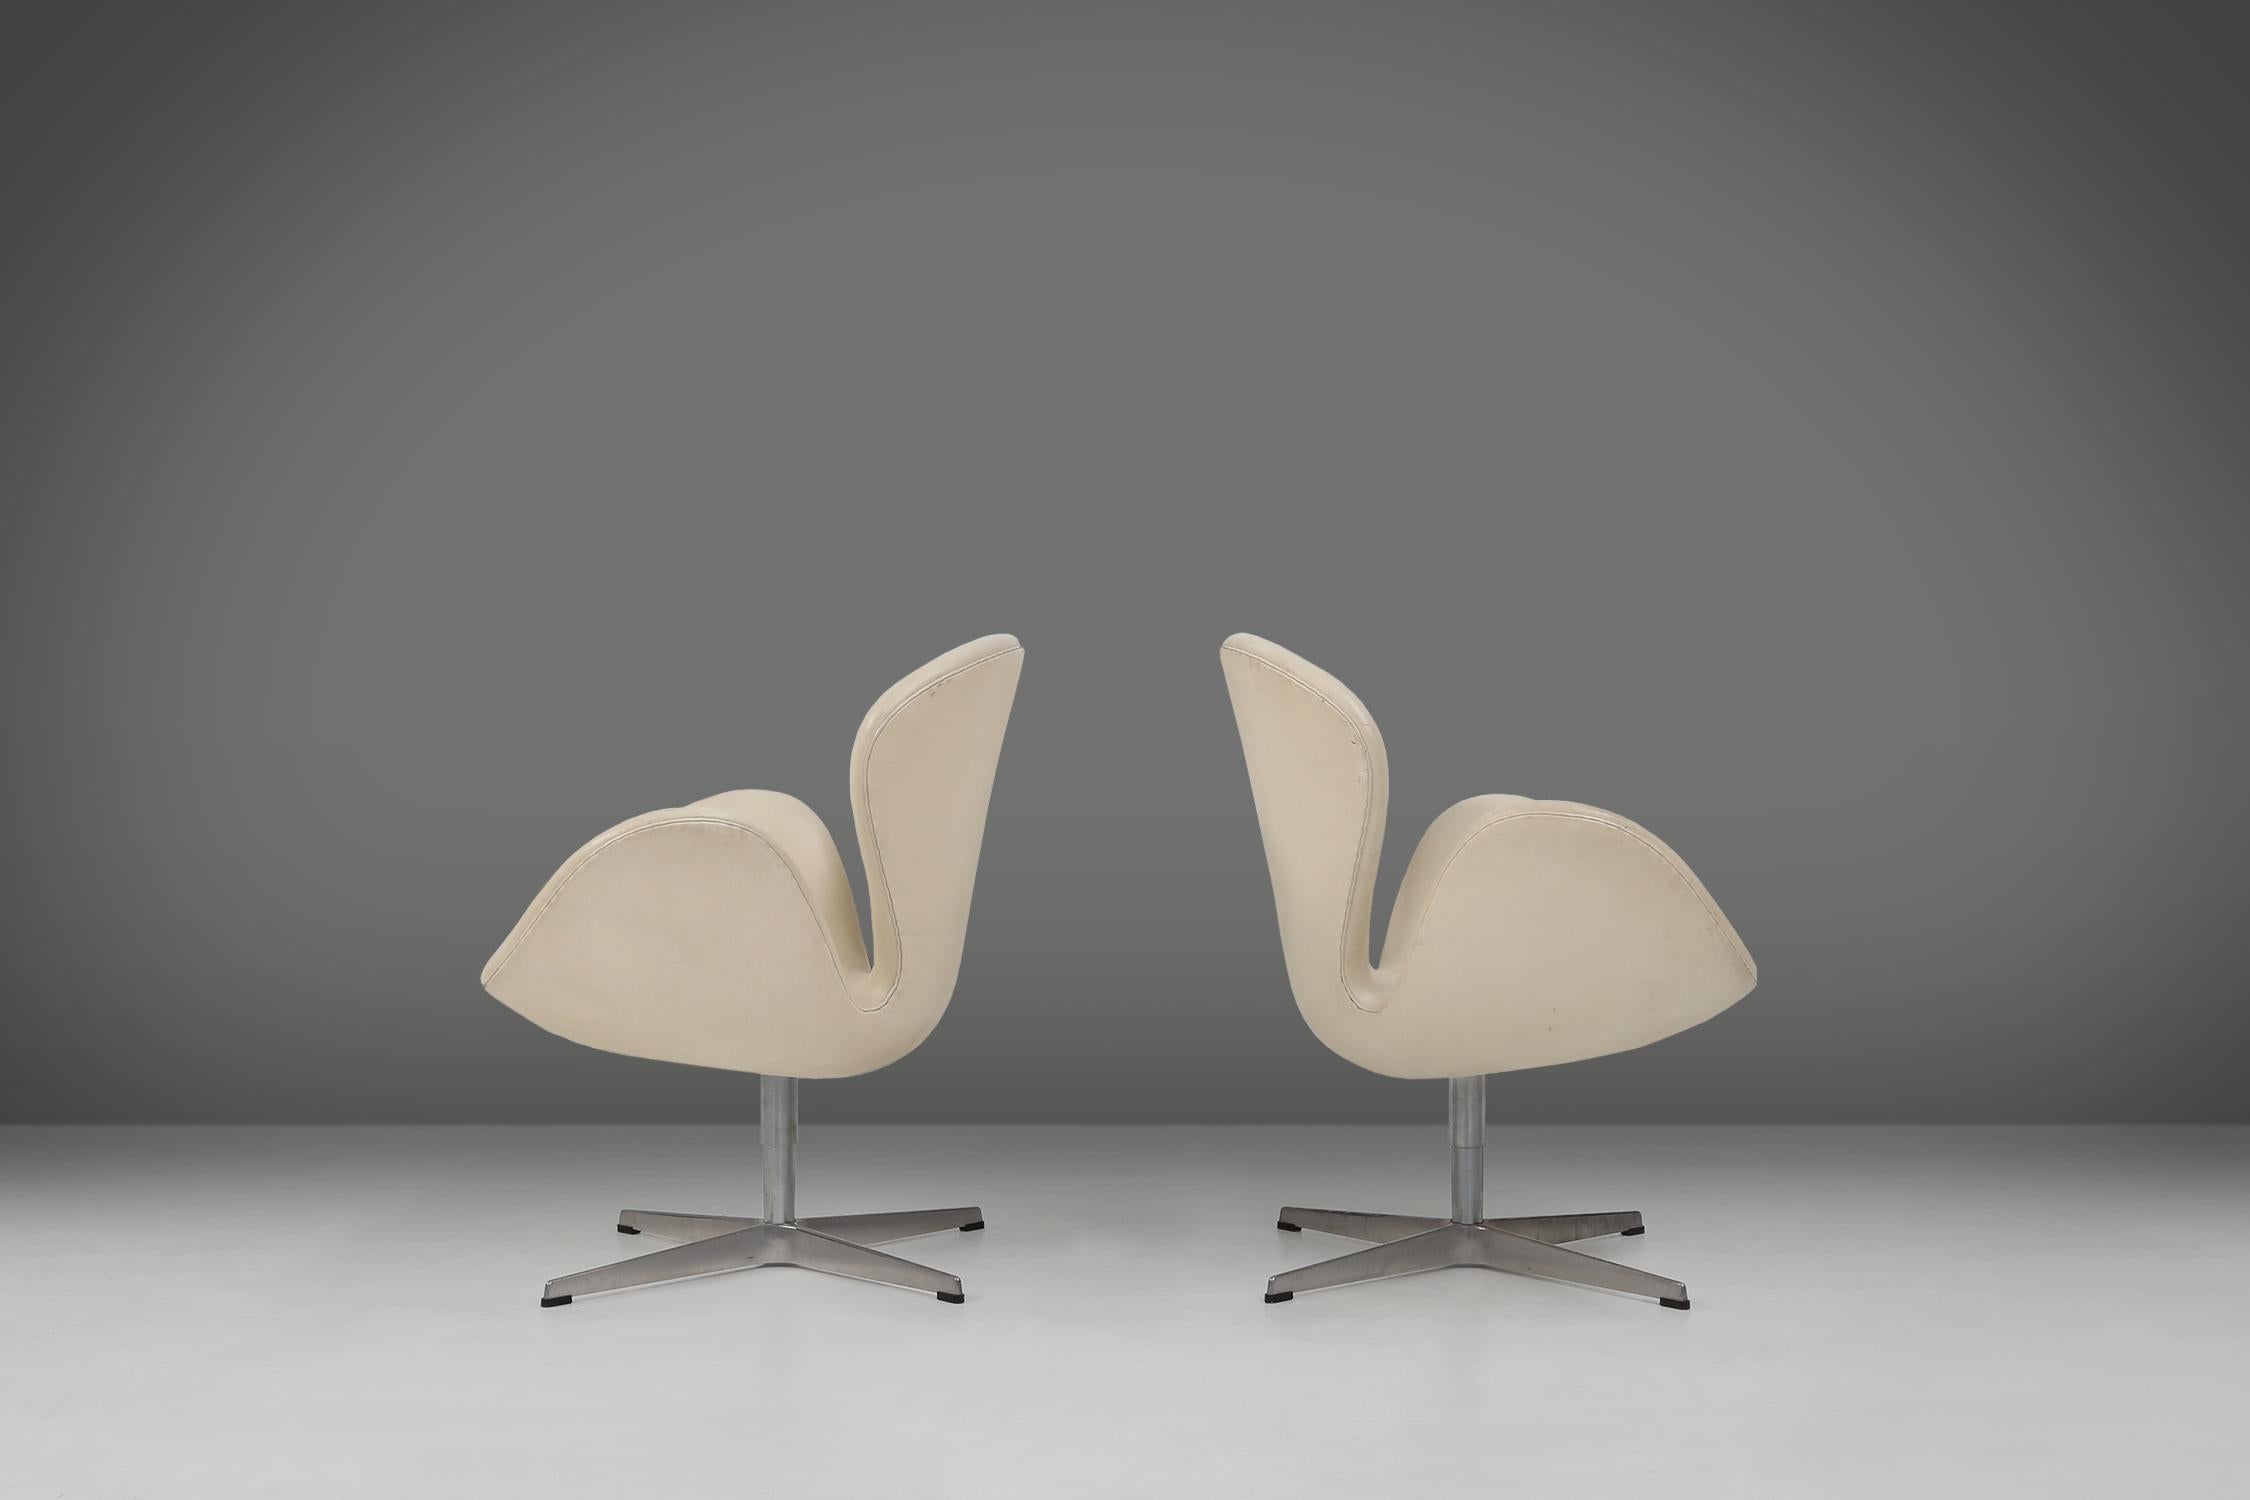 Der Schwan-Stuhl ist ein ikonischer Entwurf des berühmten dänischen Architekten und Designers Arne Jacobsen. Er entwarf diesen Stuhl 1958 für die Lobby und die Lounge des SAS Royal Hotels in Kopenhagen. Der Stuhl hat keine geraden Linien, sondern